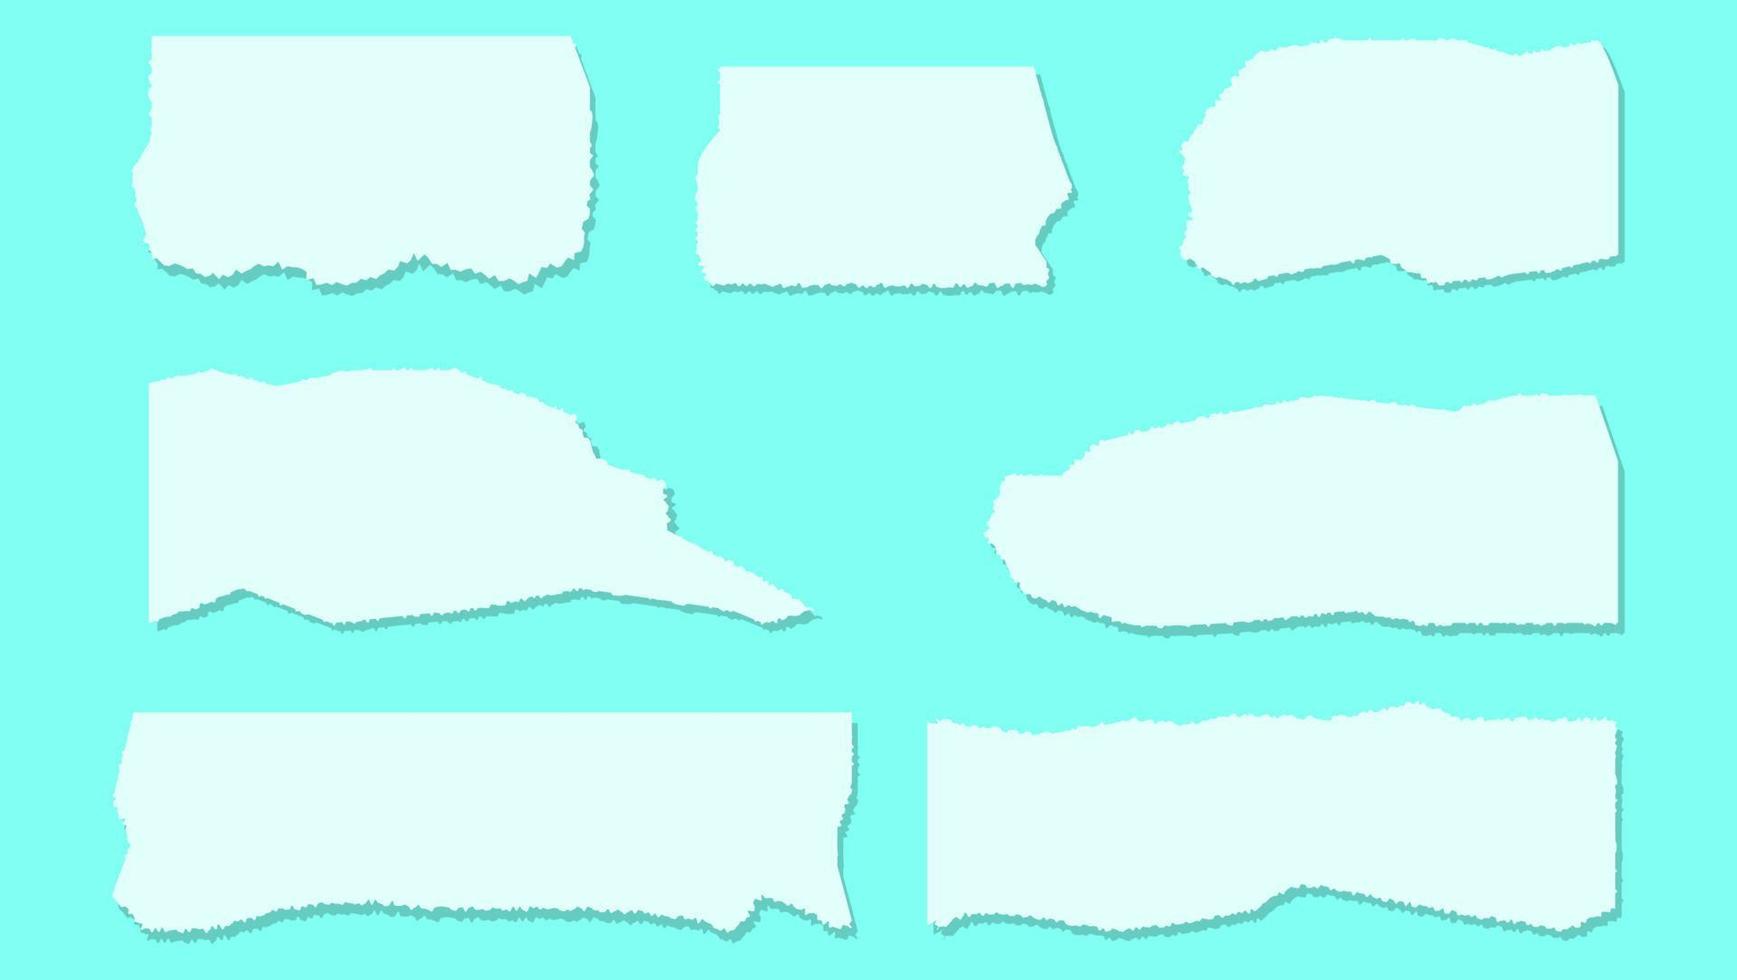 Satz verschiedene Formen leeres weißes Papier zerrissene Rahmenentwurfsschablone vektor